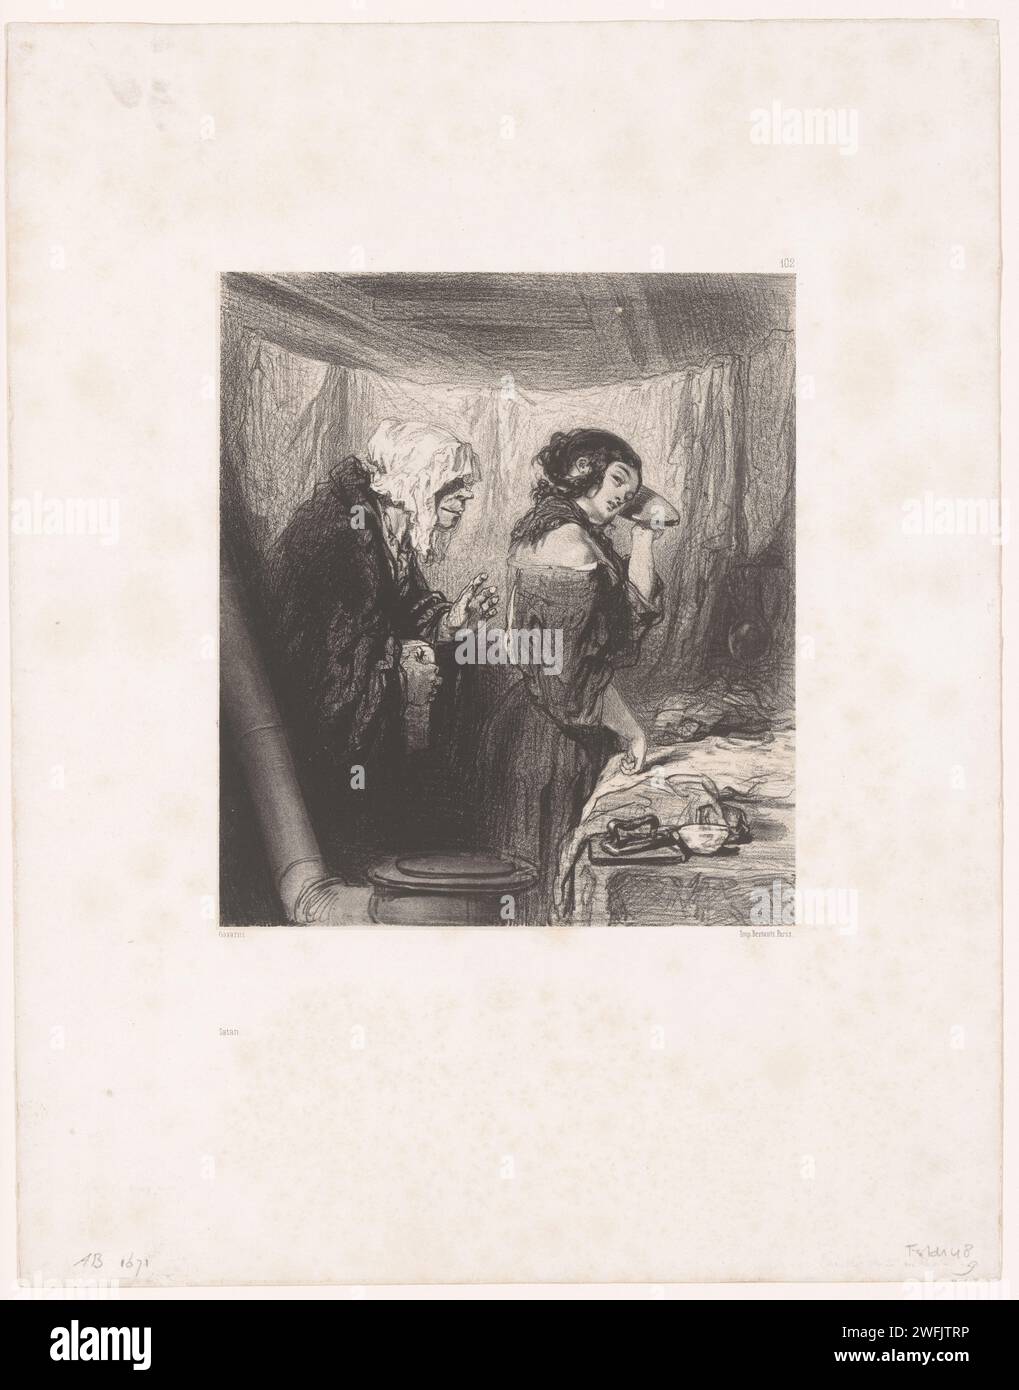 Das alte Paar spricht mit einer jungen Wäscherin, Paul Gavarni, Paris-Druckpapierpräparat 1854. Hässliche, alte Frau, verdammt. Waschhaus, Waschküche, Waschküche. Jugendliche, junge Frau, Jungfrau Stockfoto